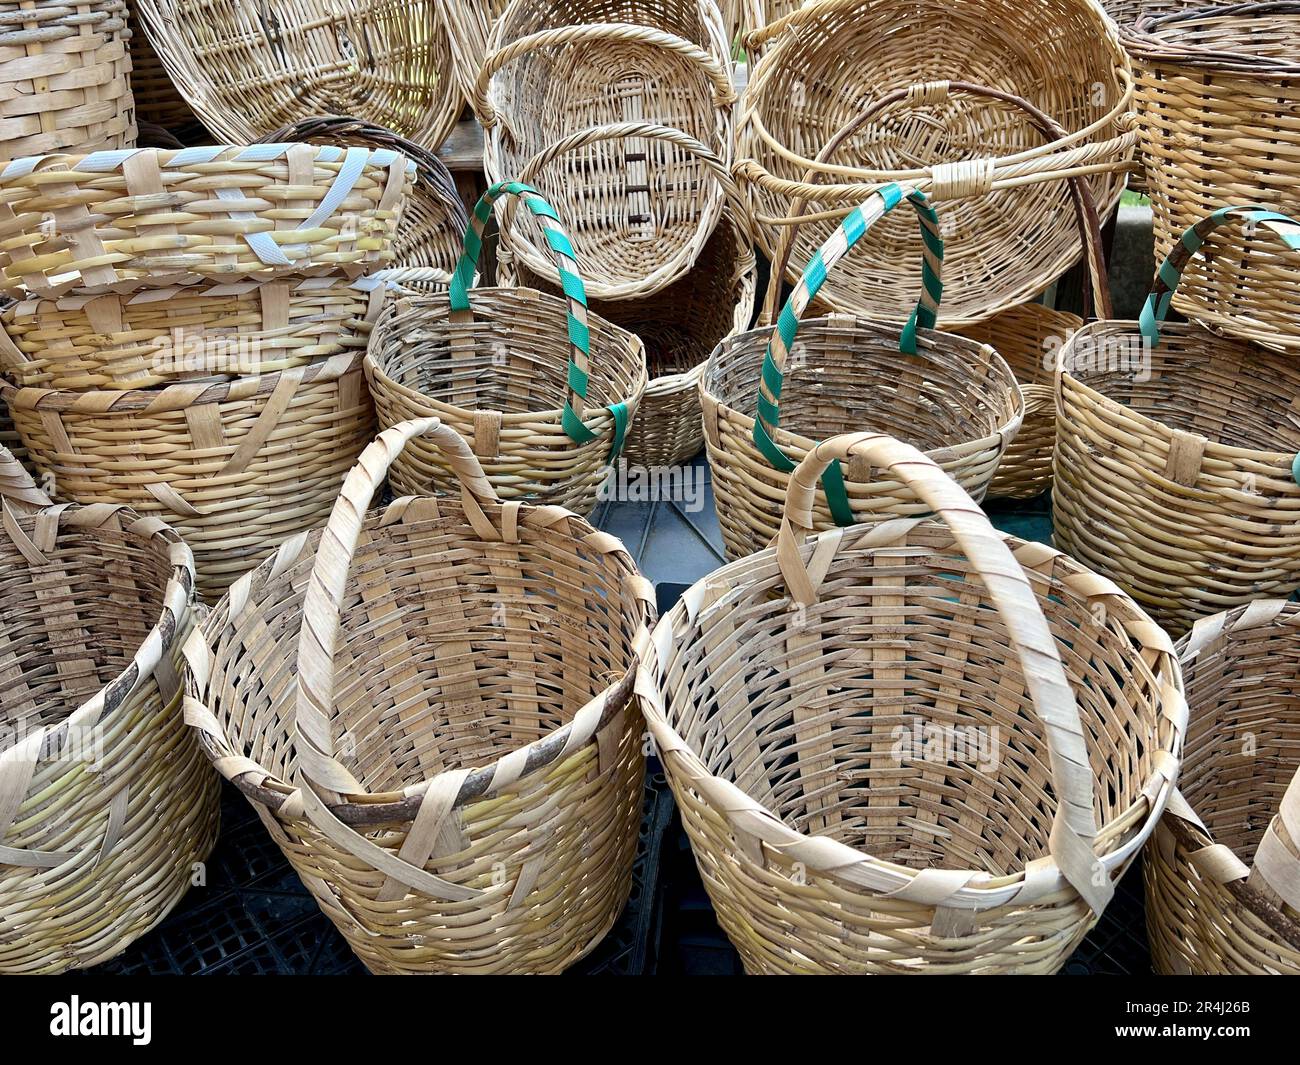 Cestini, canestri in paglia naturale fatti a mano in mercato bazar